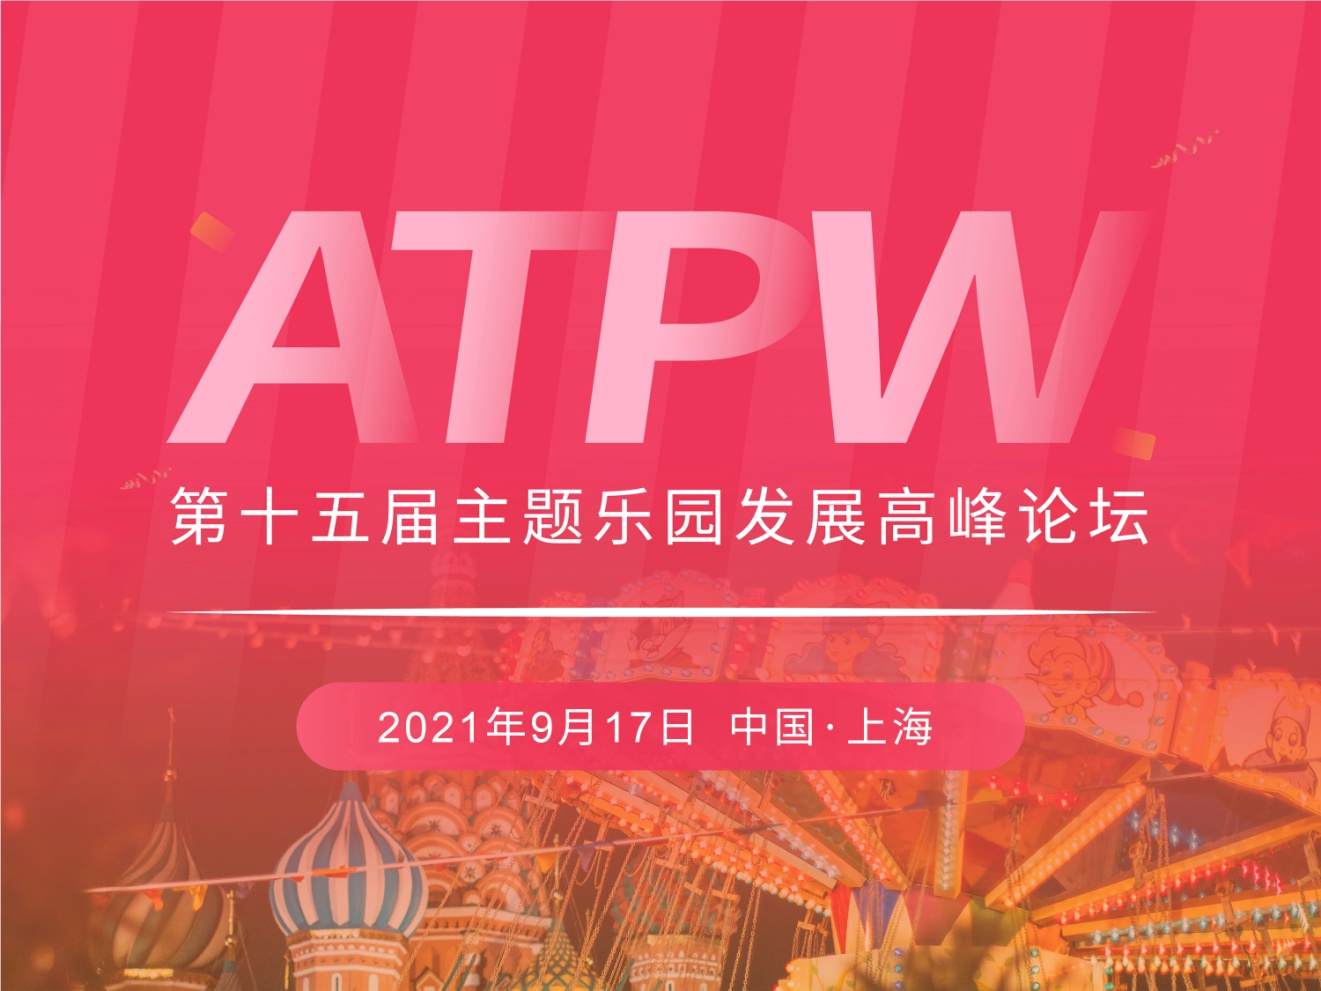 ATPW 2021年度峰会暨第十五届主题乐园发展高峰论坛即将召开